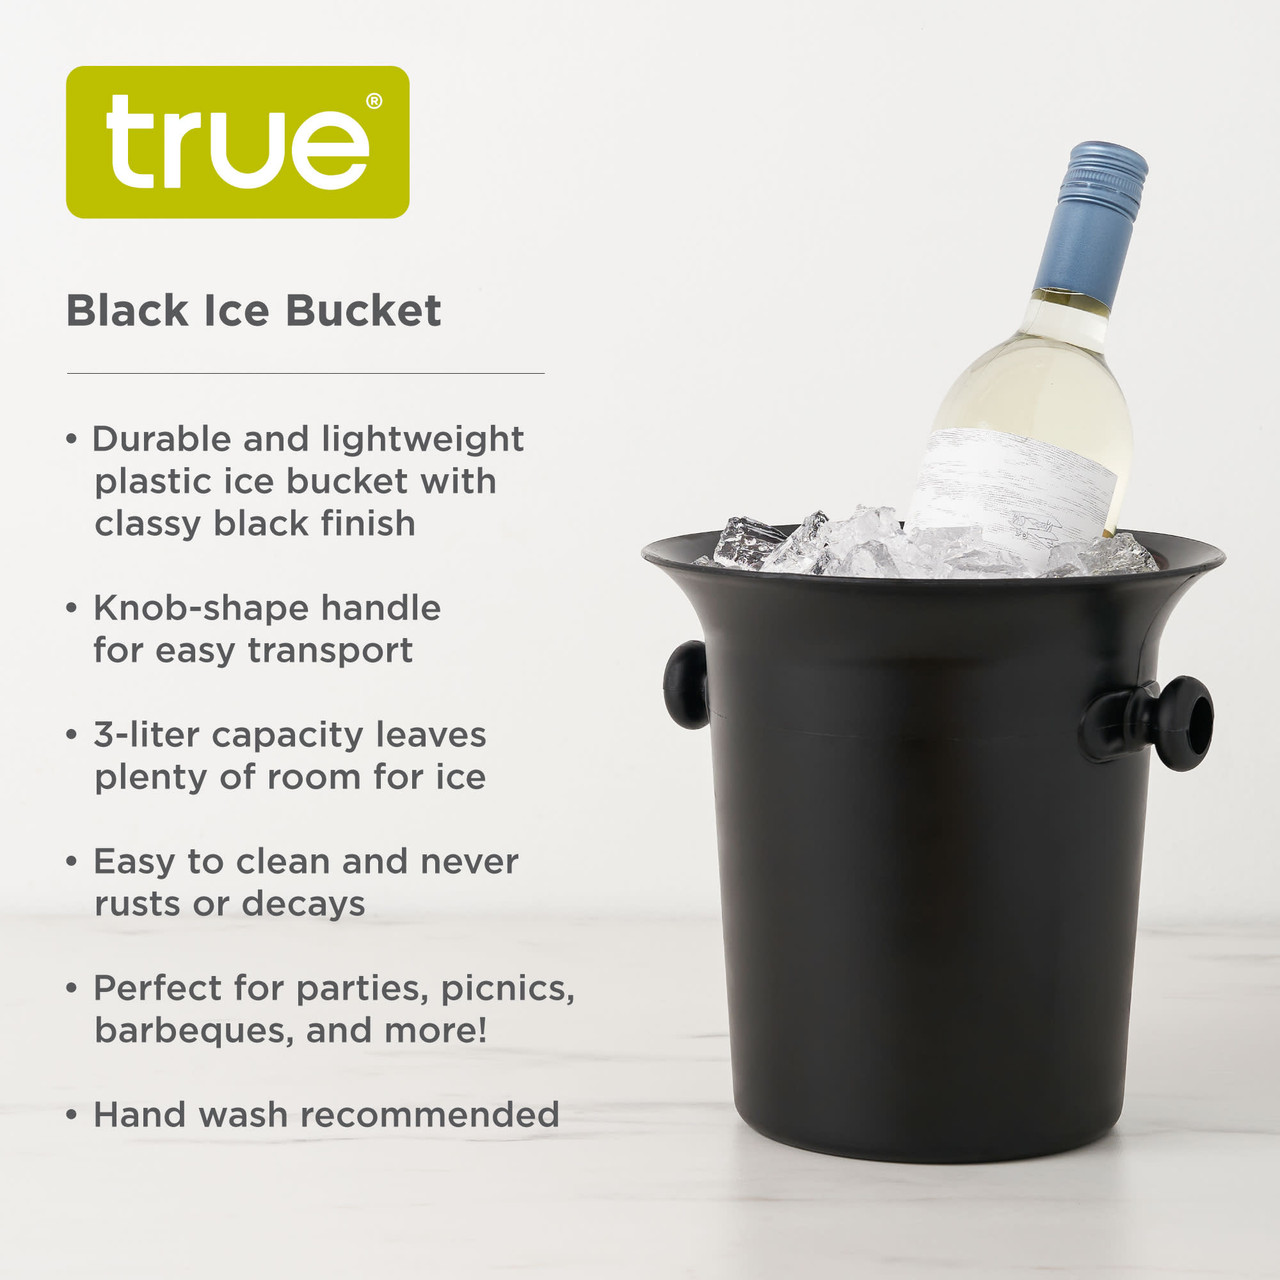 Black Ice Bucket by True